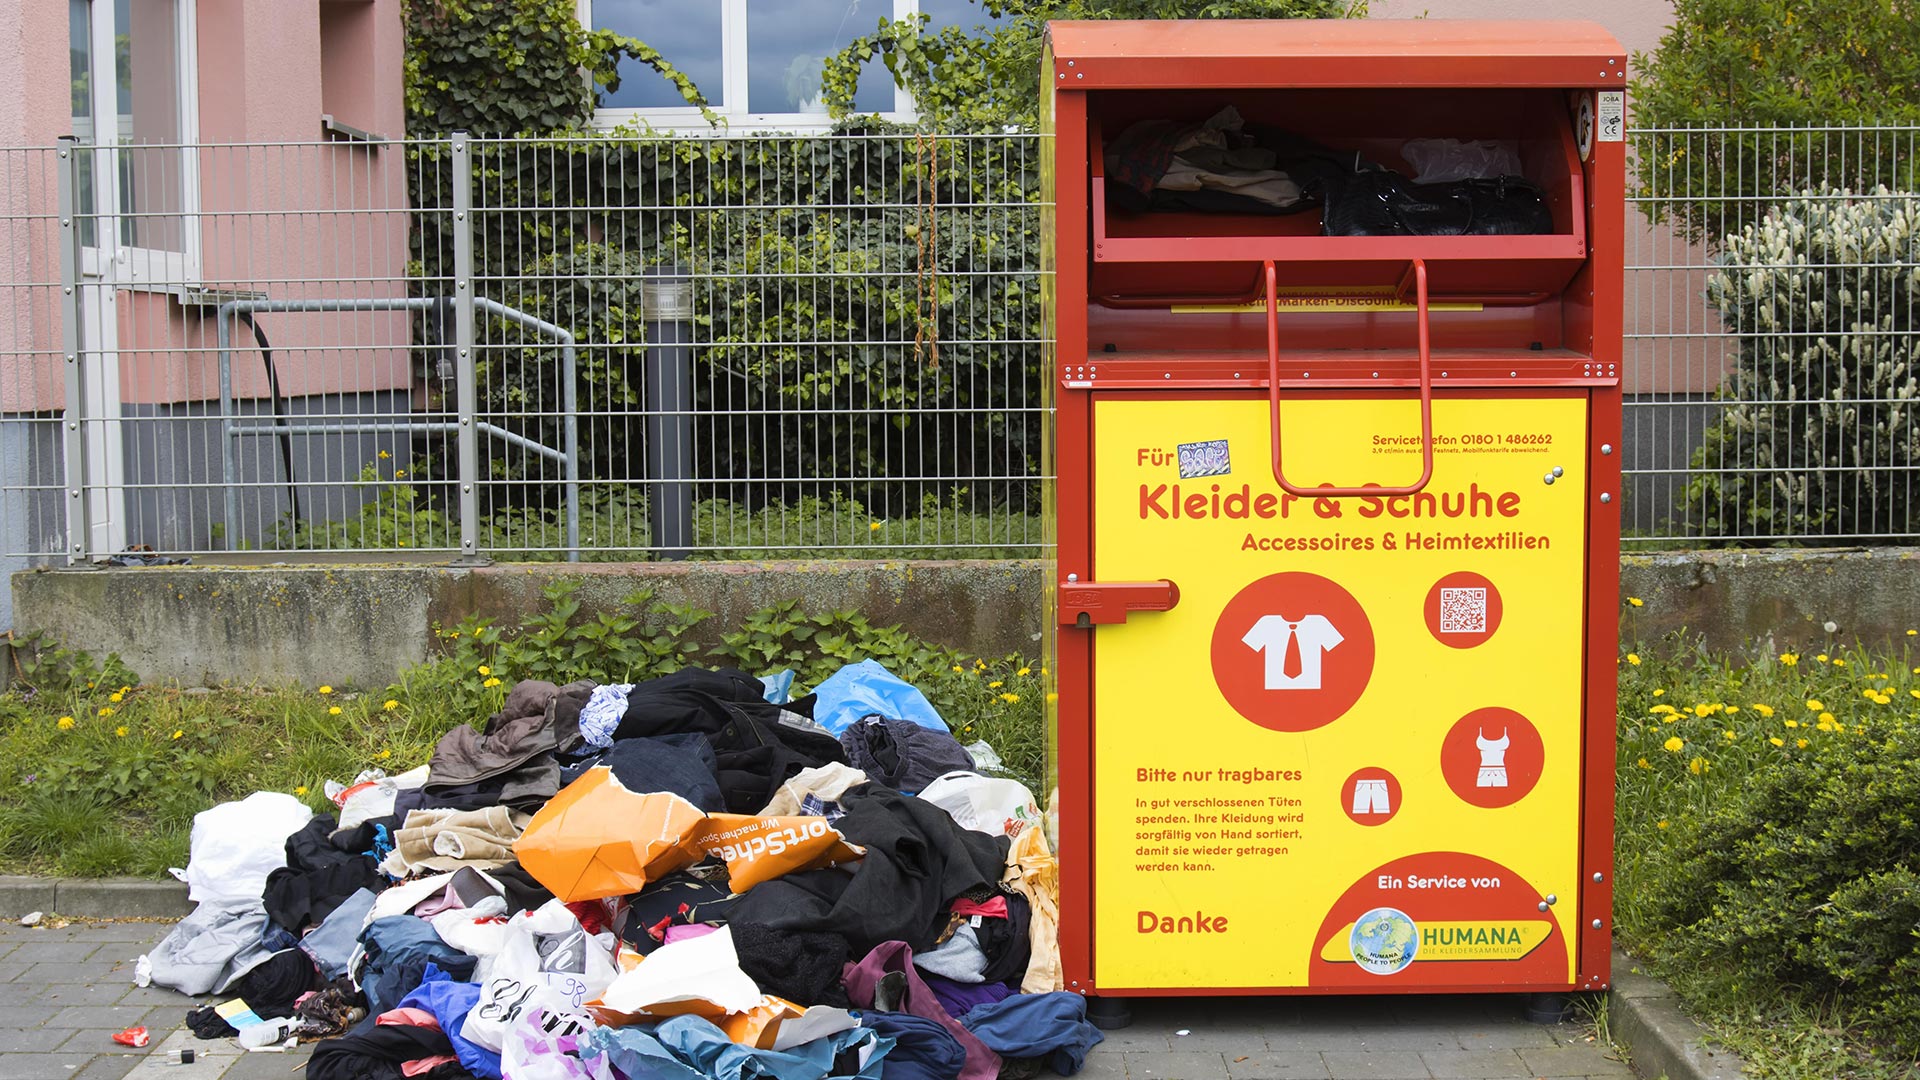 Kleidung vor Container für Altkleider | picture alliance / imageBROKER